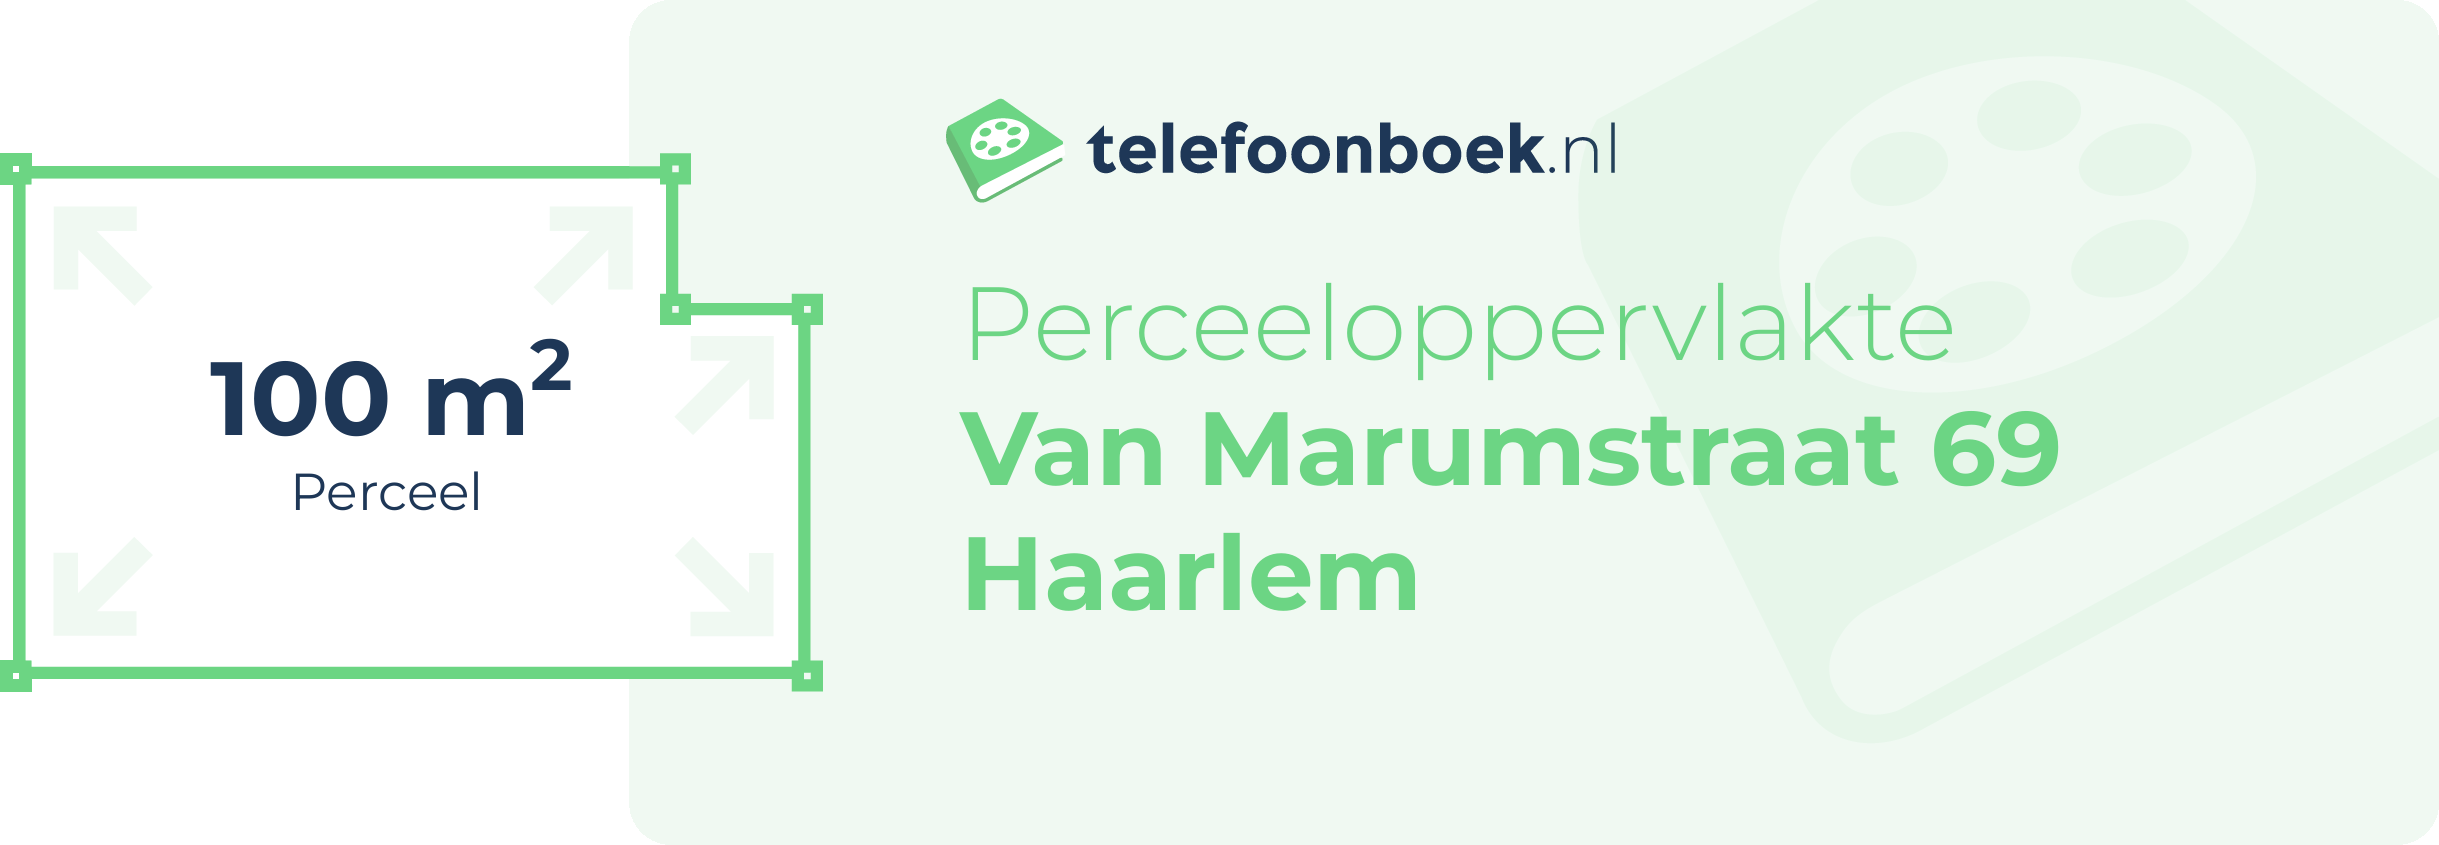 Perceeloppervlakte Van Marumstraat 69 Haarlem